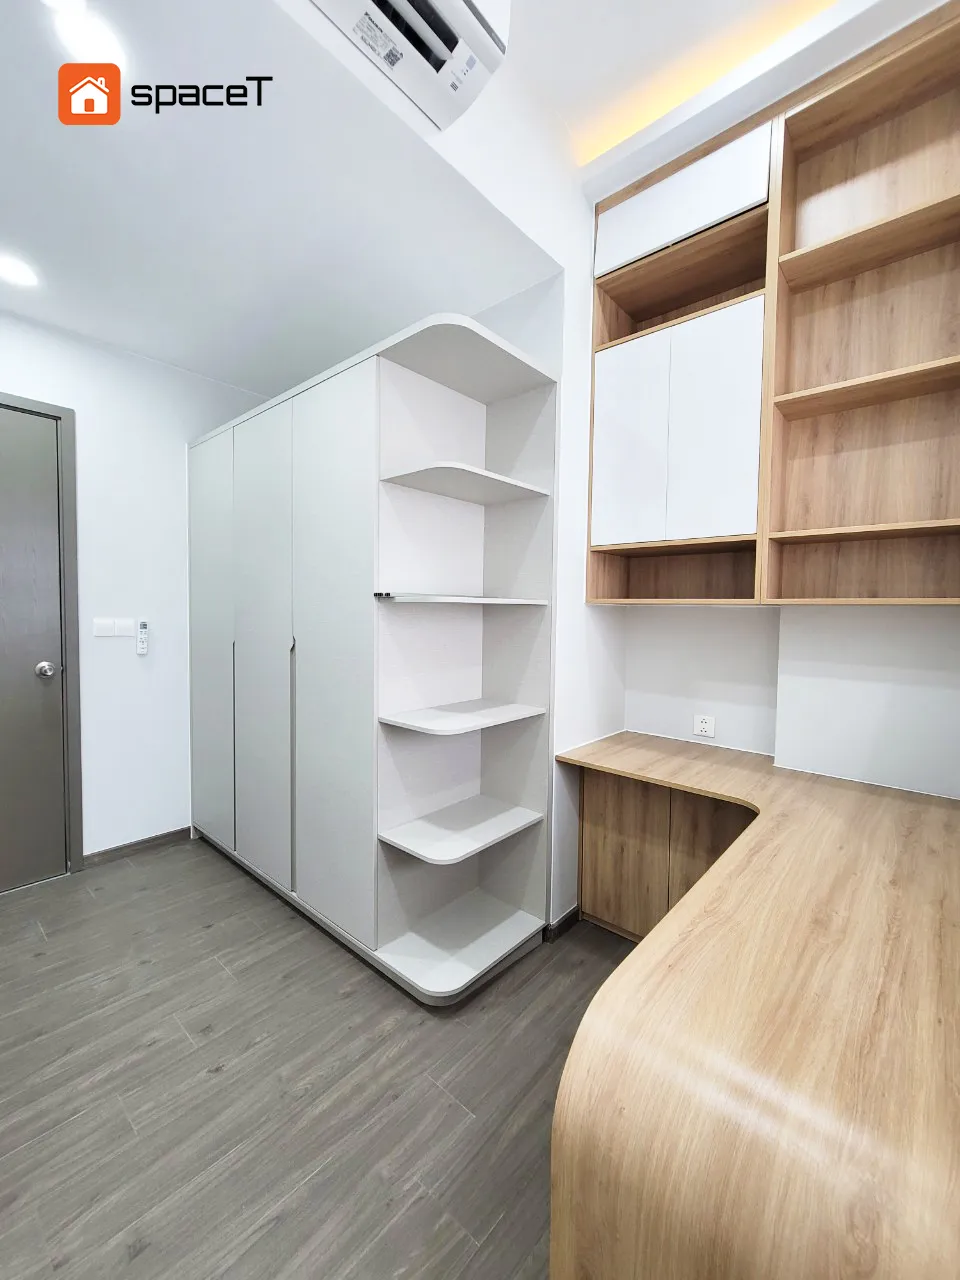 Công trình hoàn thiện nội thất cho phòng làm việc căn hộ Westgate Bình Chánh theo phong cách Scandinavian